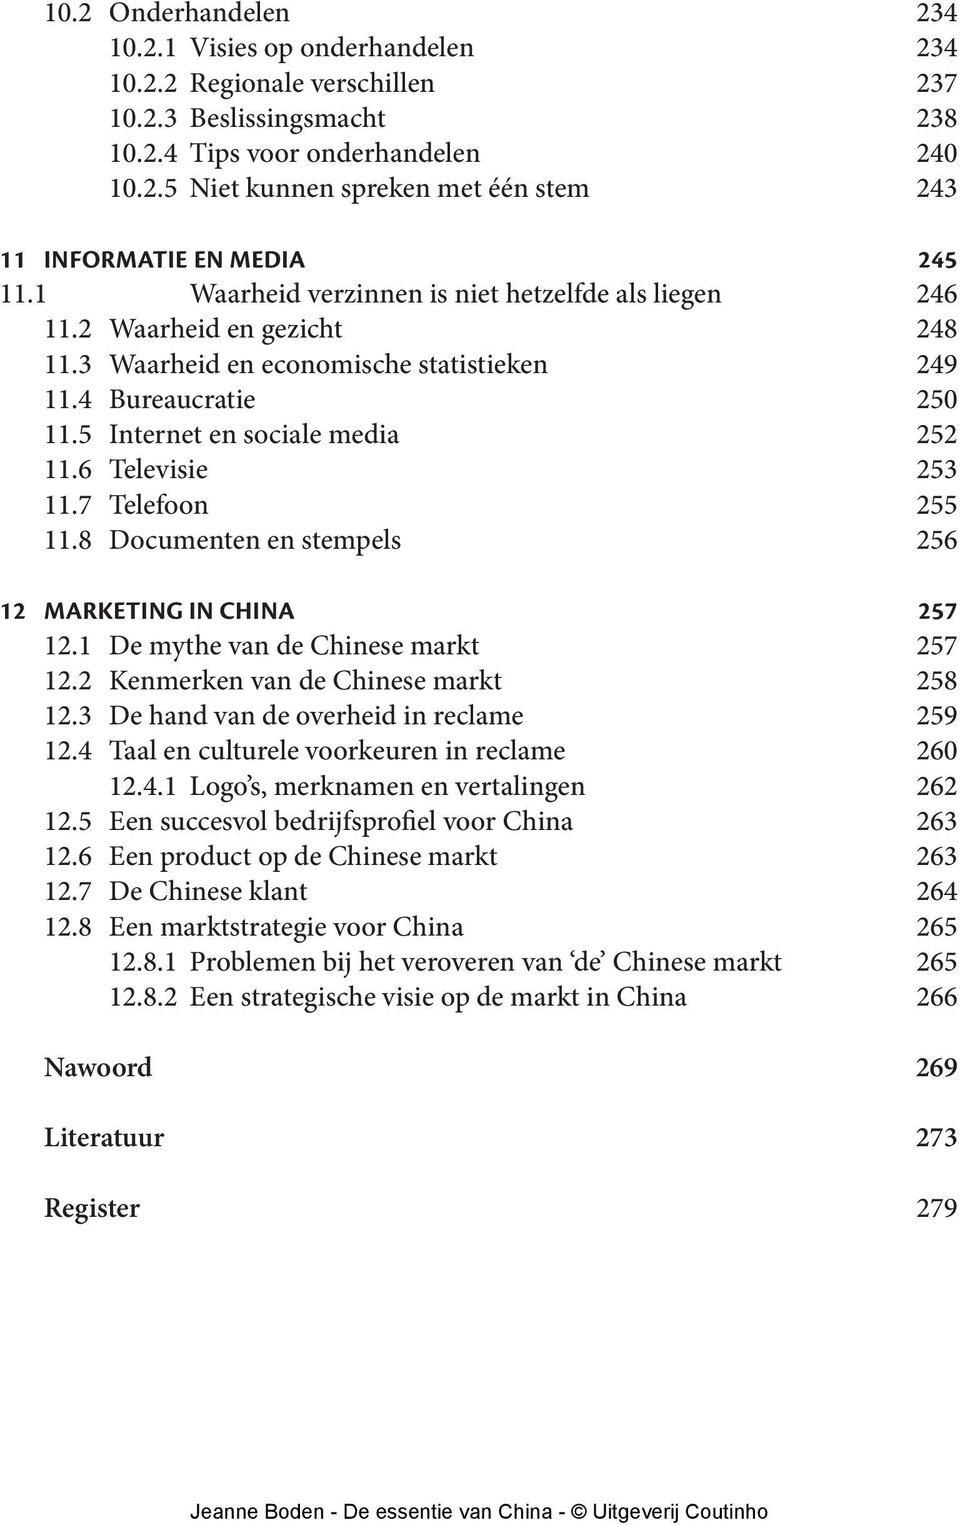 6 Televisie 253 11.7 Telefoon 255 11.8 Documenten en stempels 256 12 Marketing in China 257 12.1 De mythe van de Chinese markt 257 12.2 Kenmerken van de Chinese markt 258 12.